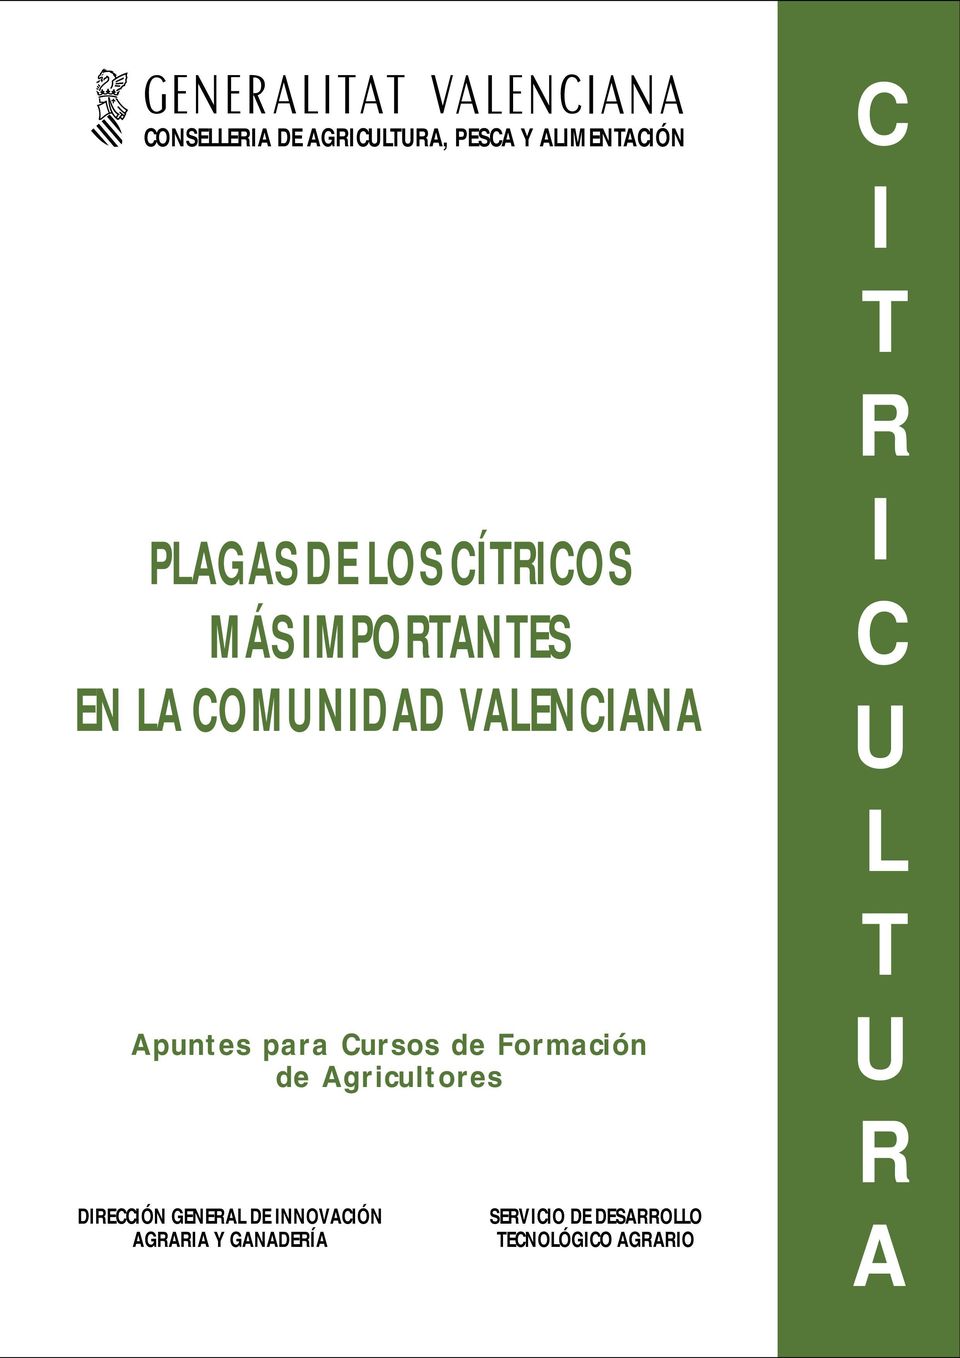 Cursos de Formación de Agricultores DIRECCIÓN GENERAL DE INNOVACIÓN